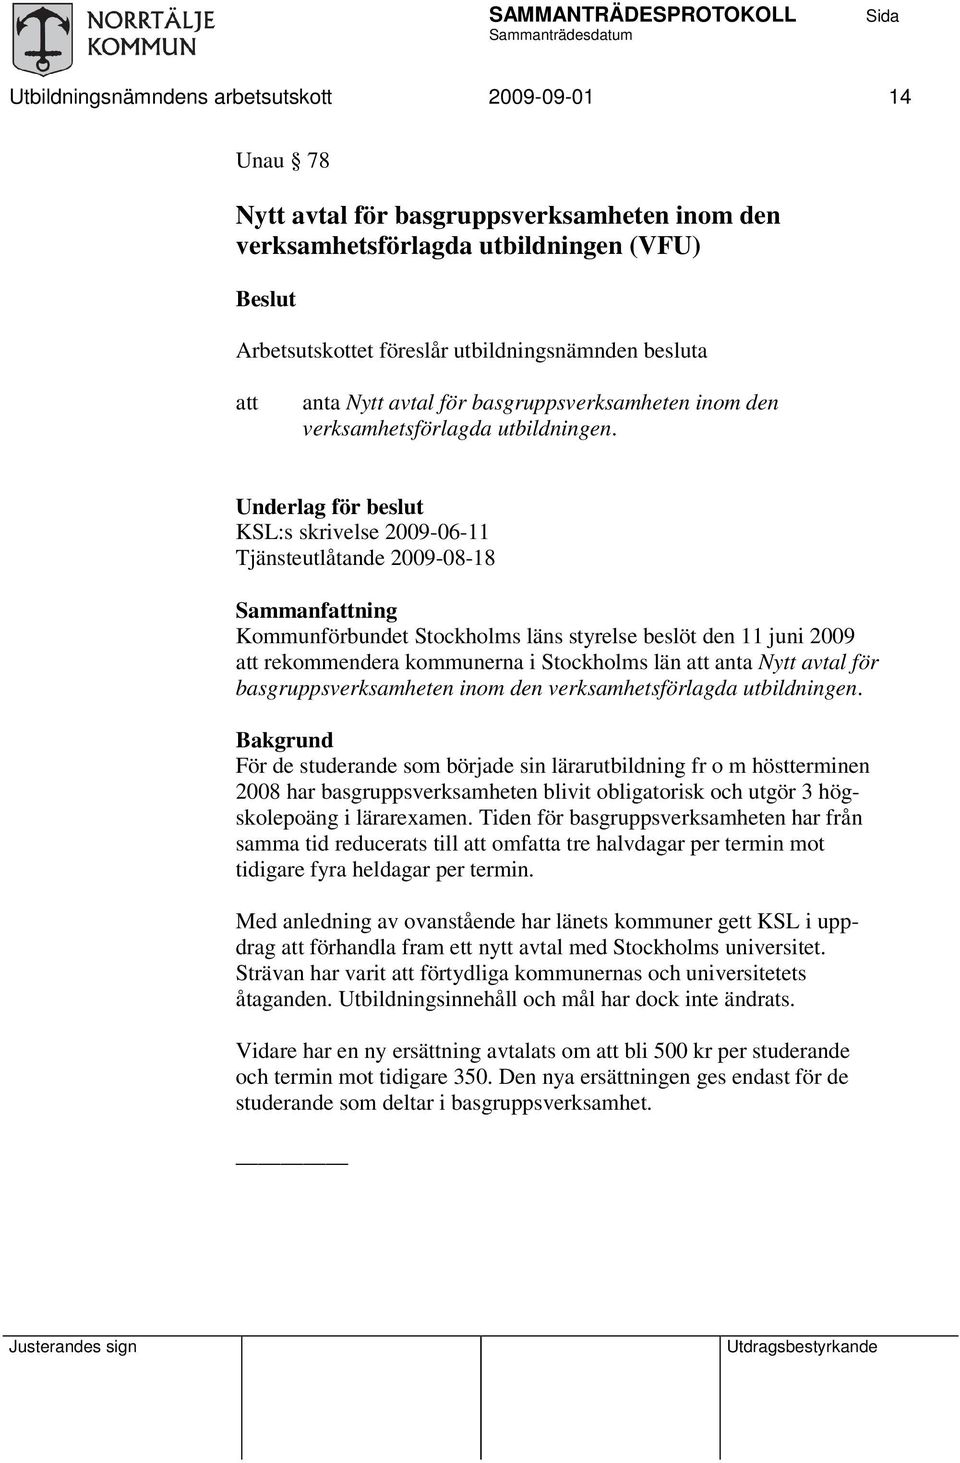 Underlag för beslut KSL:s skrivelse 2009-06-11 Tjänsteutlåtande 2009-08-18 Sammanfattning Kommunförbundet Stockholms läns styrelse beslöt den 11 juni 2009 att rekommendera kommunerna i Stockholms län